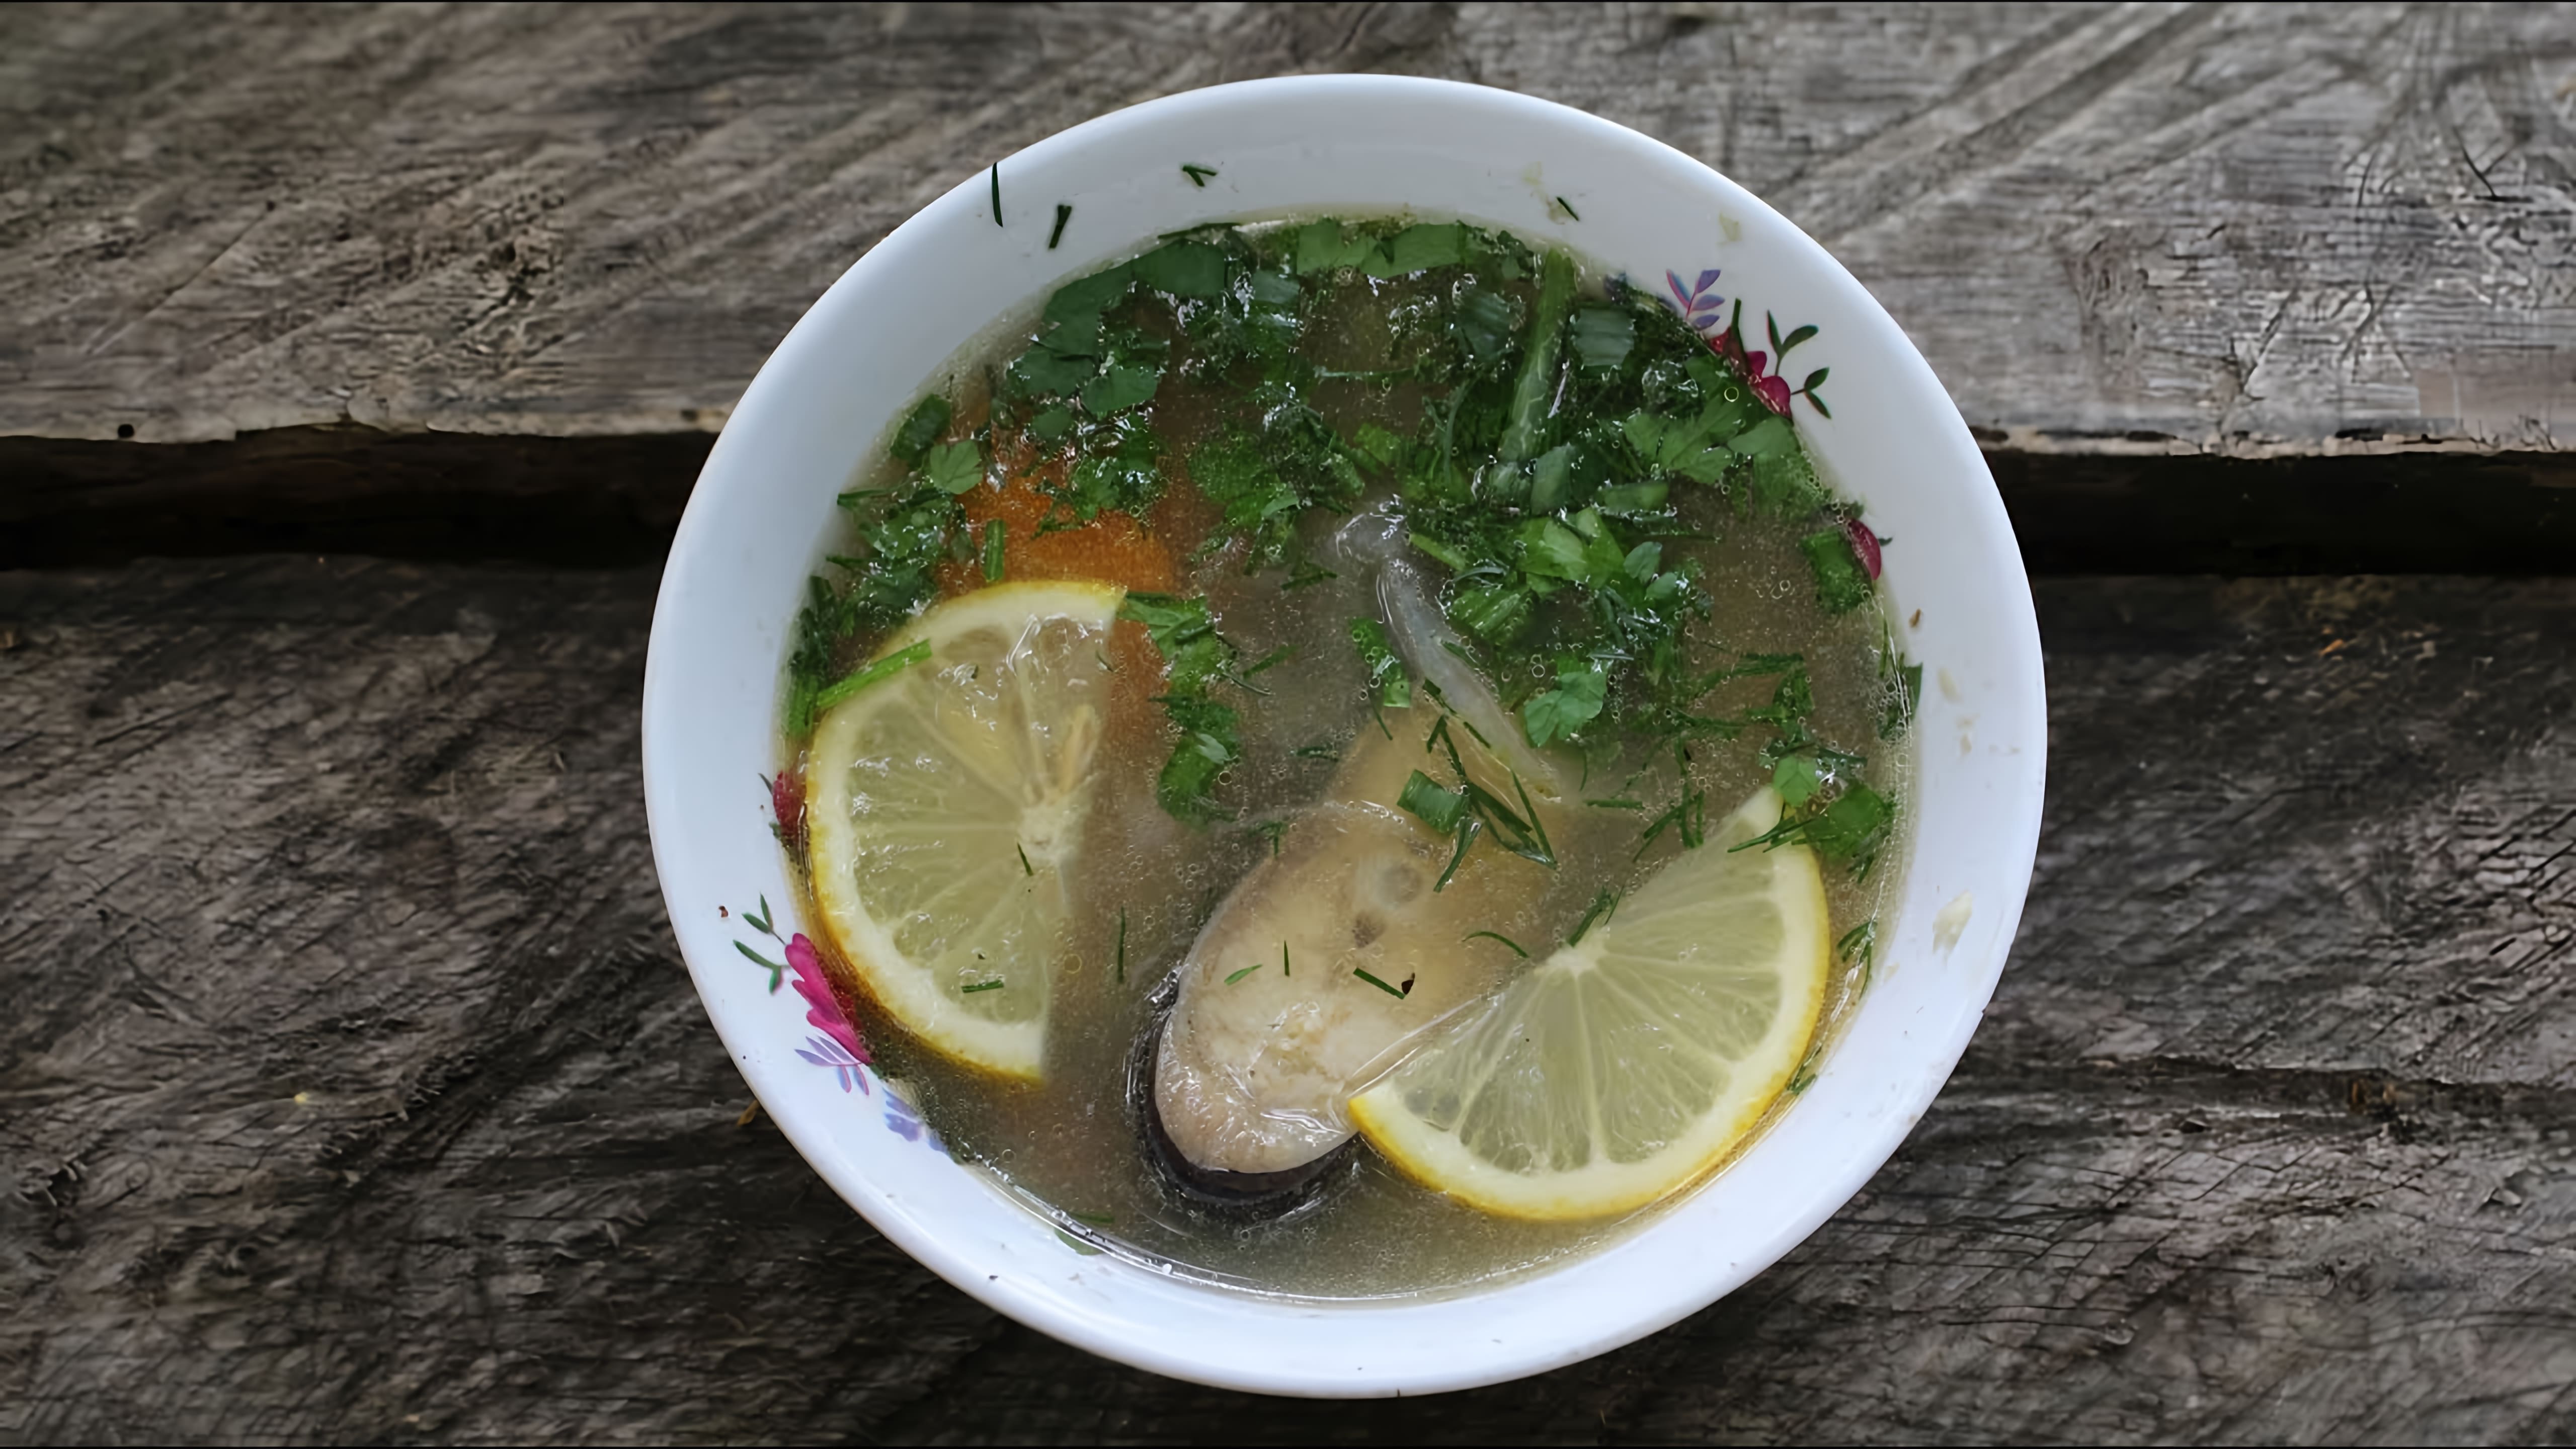 Уха из сома как приготовить в казане | Сatfish soup VKAZANE